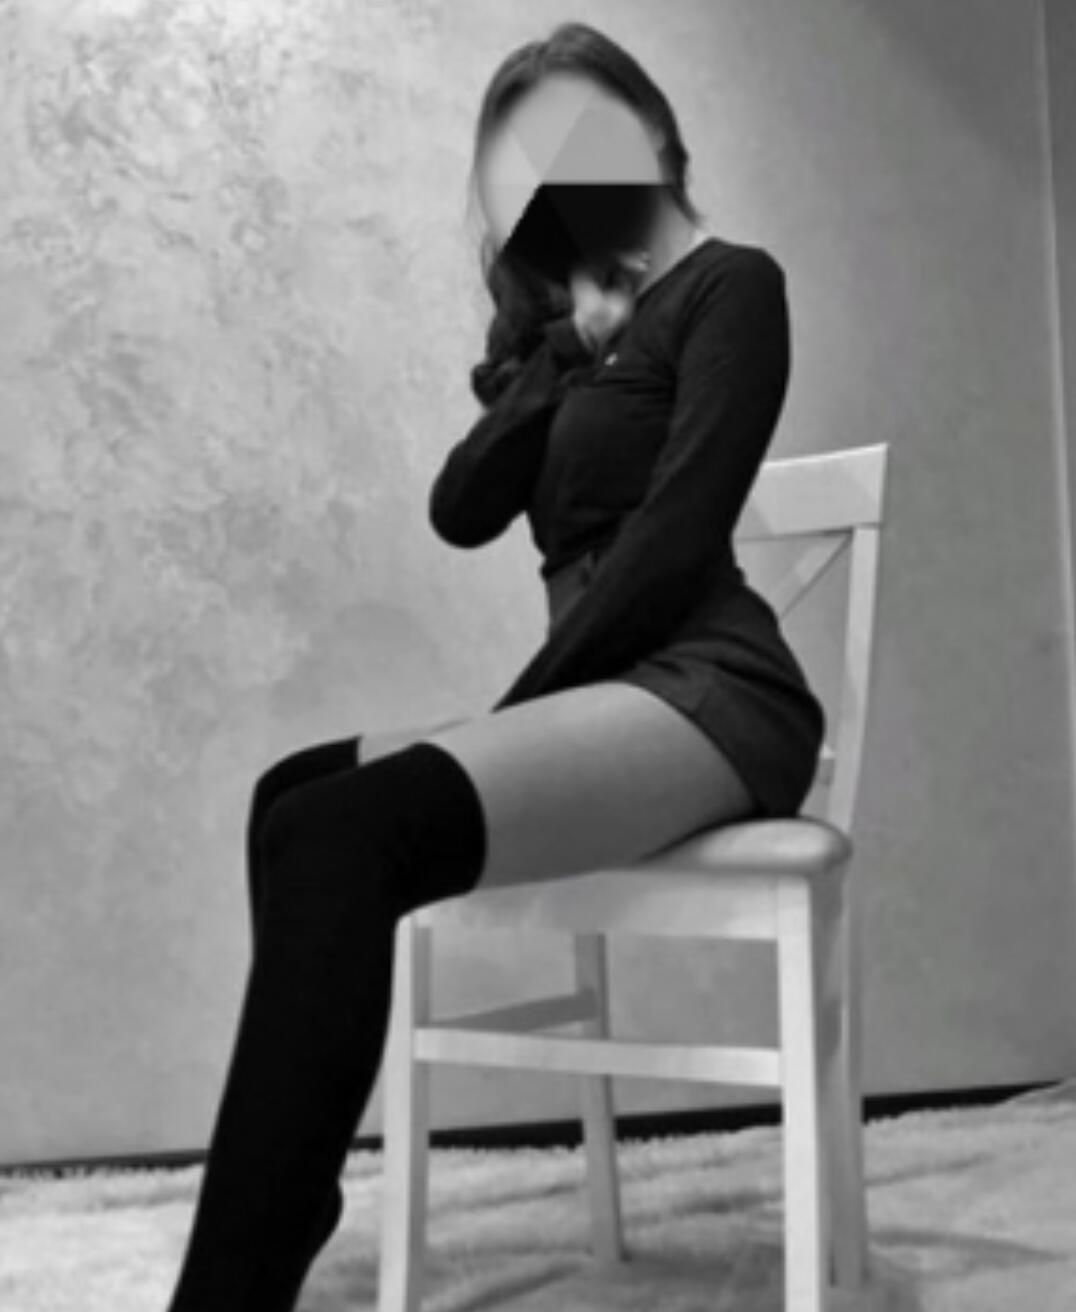 Проститутка Алина, фото 1, тел: 0506849931. В центре города - Киев